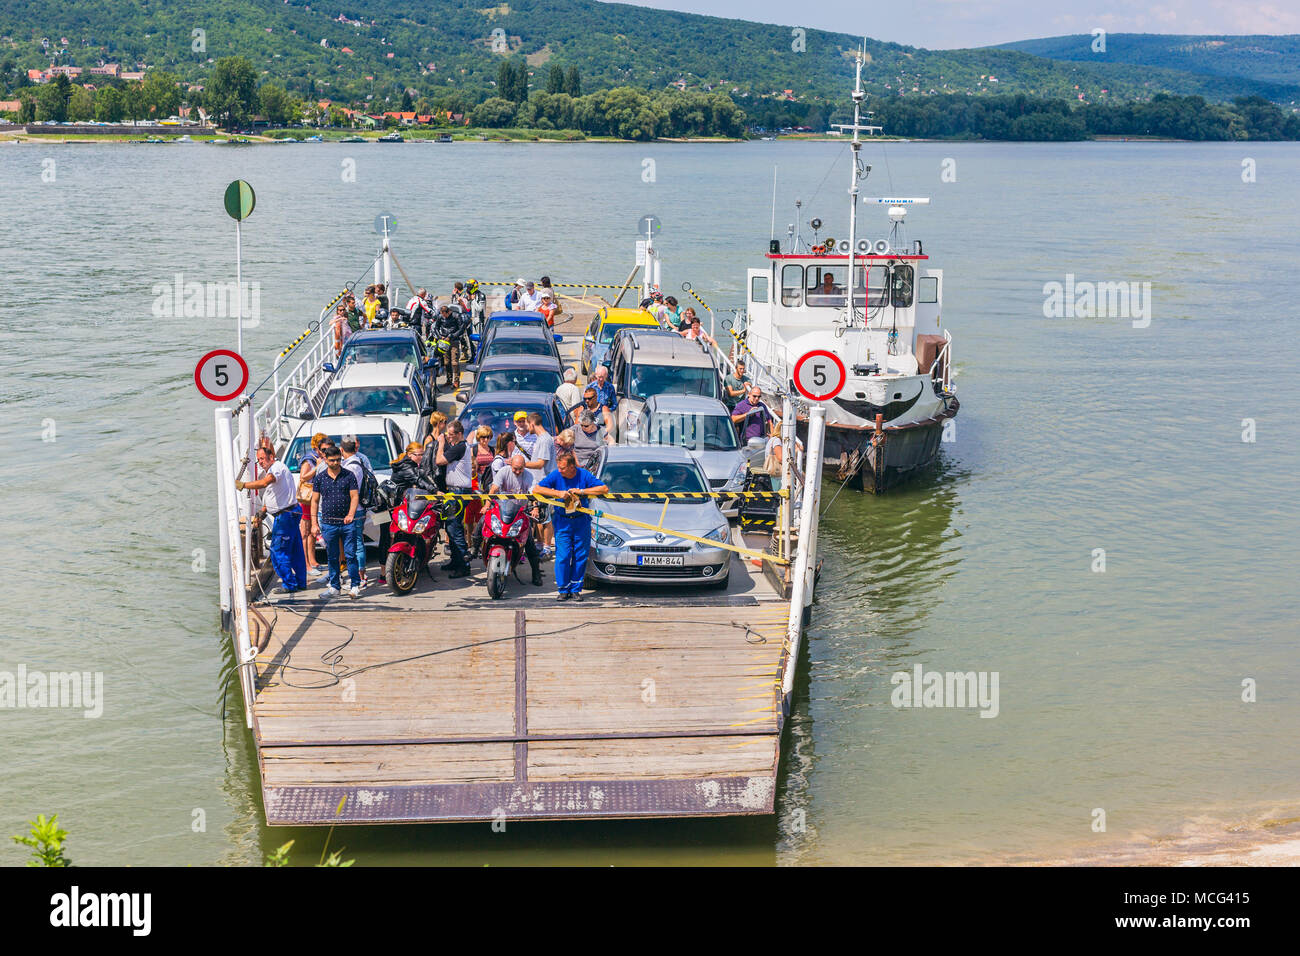 Vac, Ungarn. Juli 16, 2017. Lokalen Fähre über die Donau Transport von Menschen aus Vac Stadt Tahitotfalu, Szentendre Insel, Hunga Stockfoto